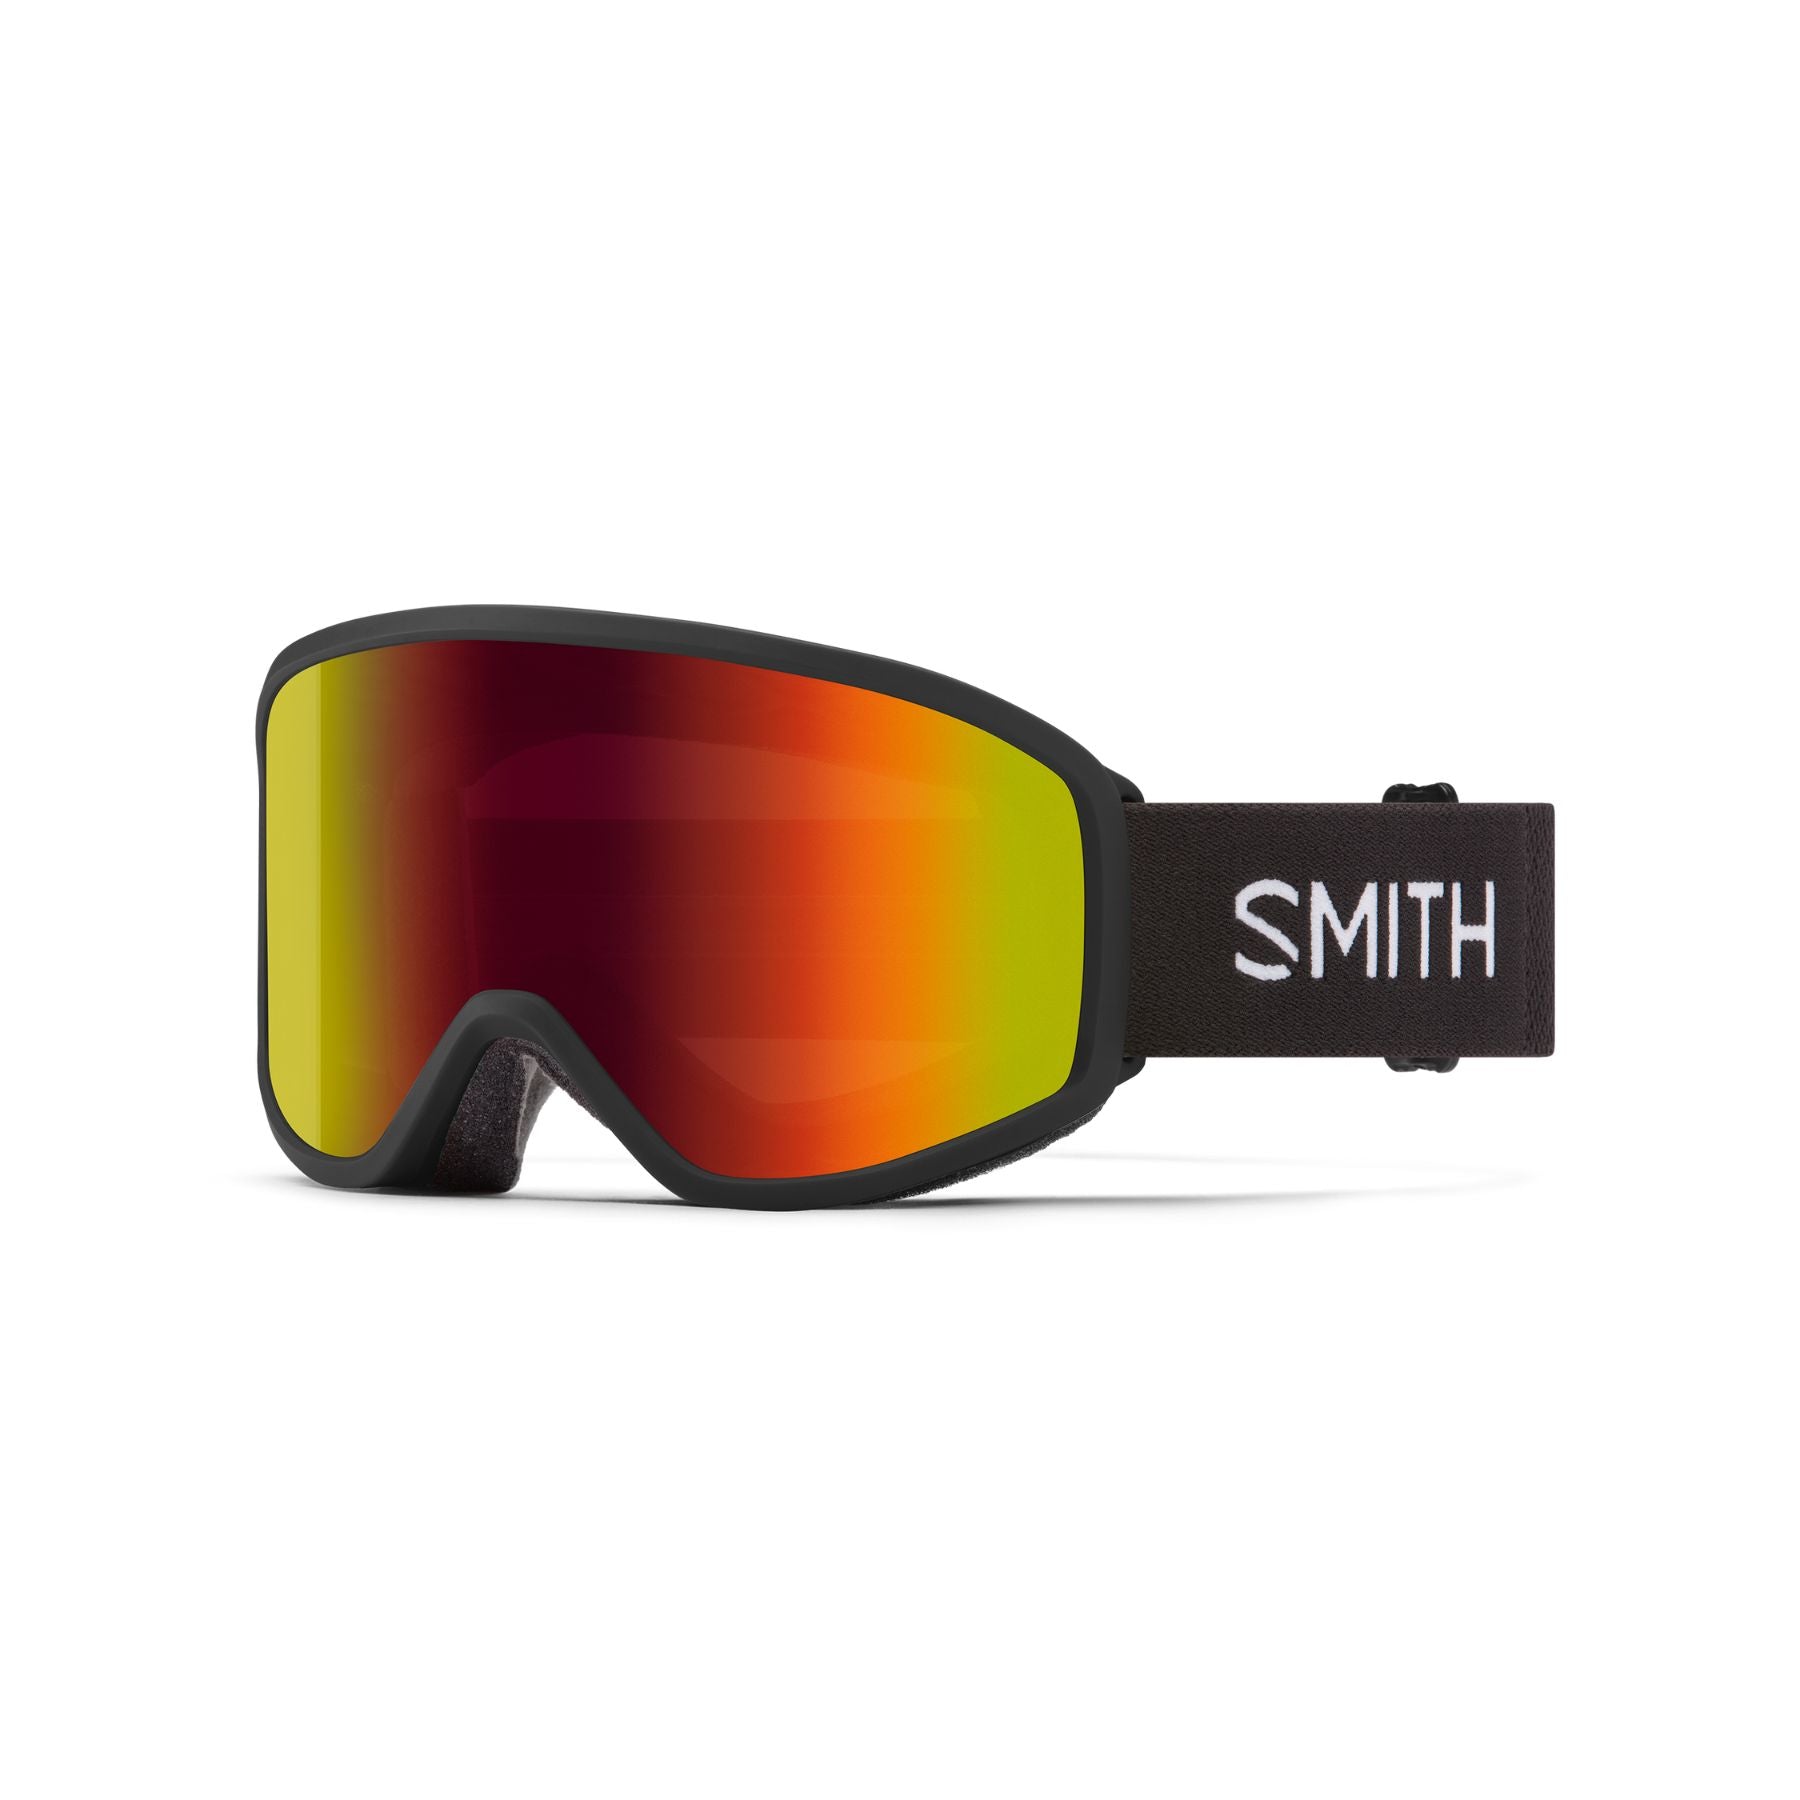 Smith Reason OTG Goggles in Black